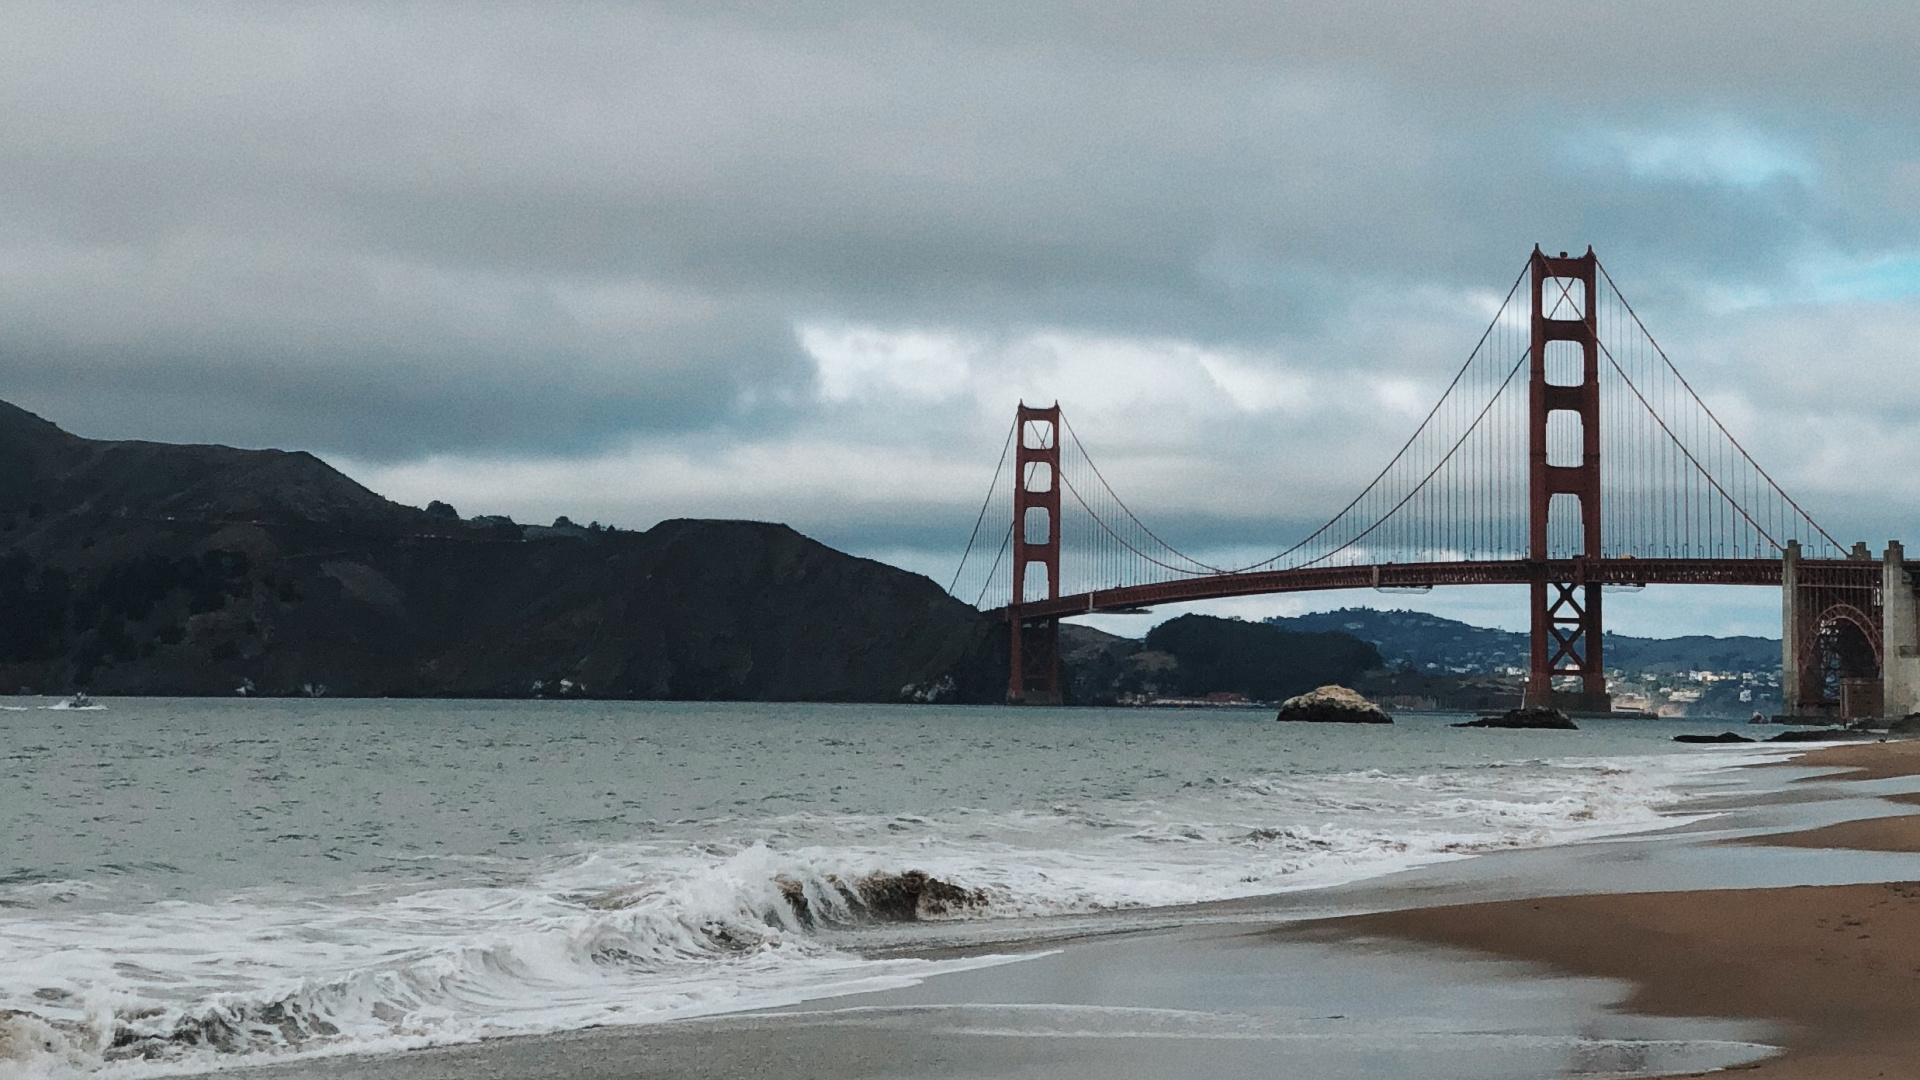 Golden Gate Bridge, Coast, Sea, Bridge, Beach. Wallpaper in 1920x1080 Resolution